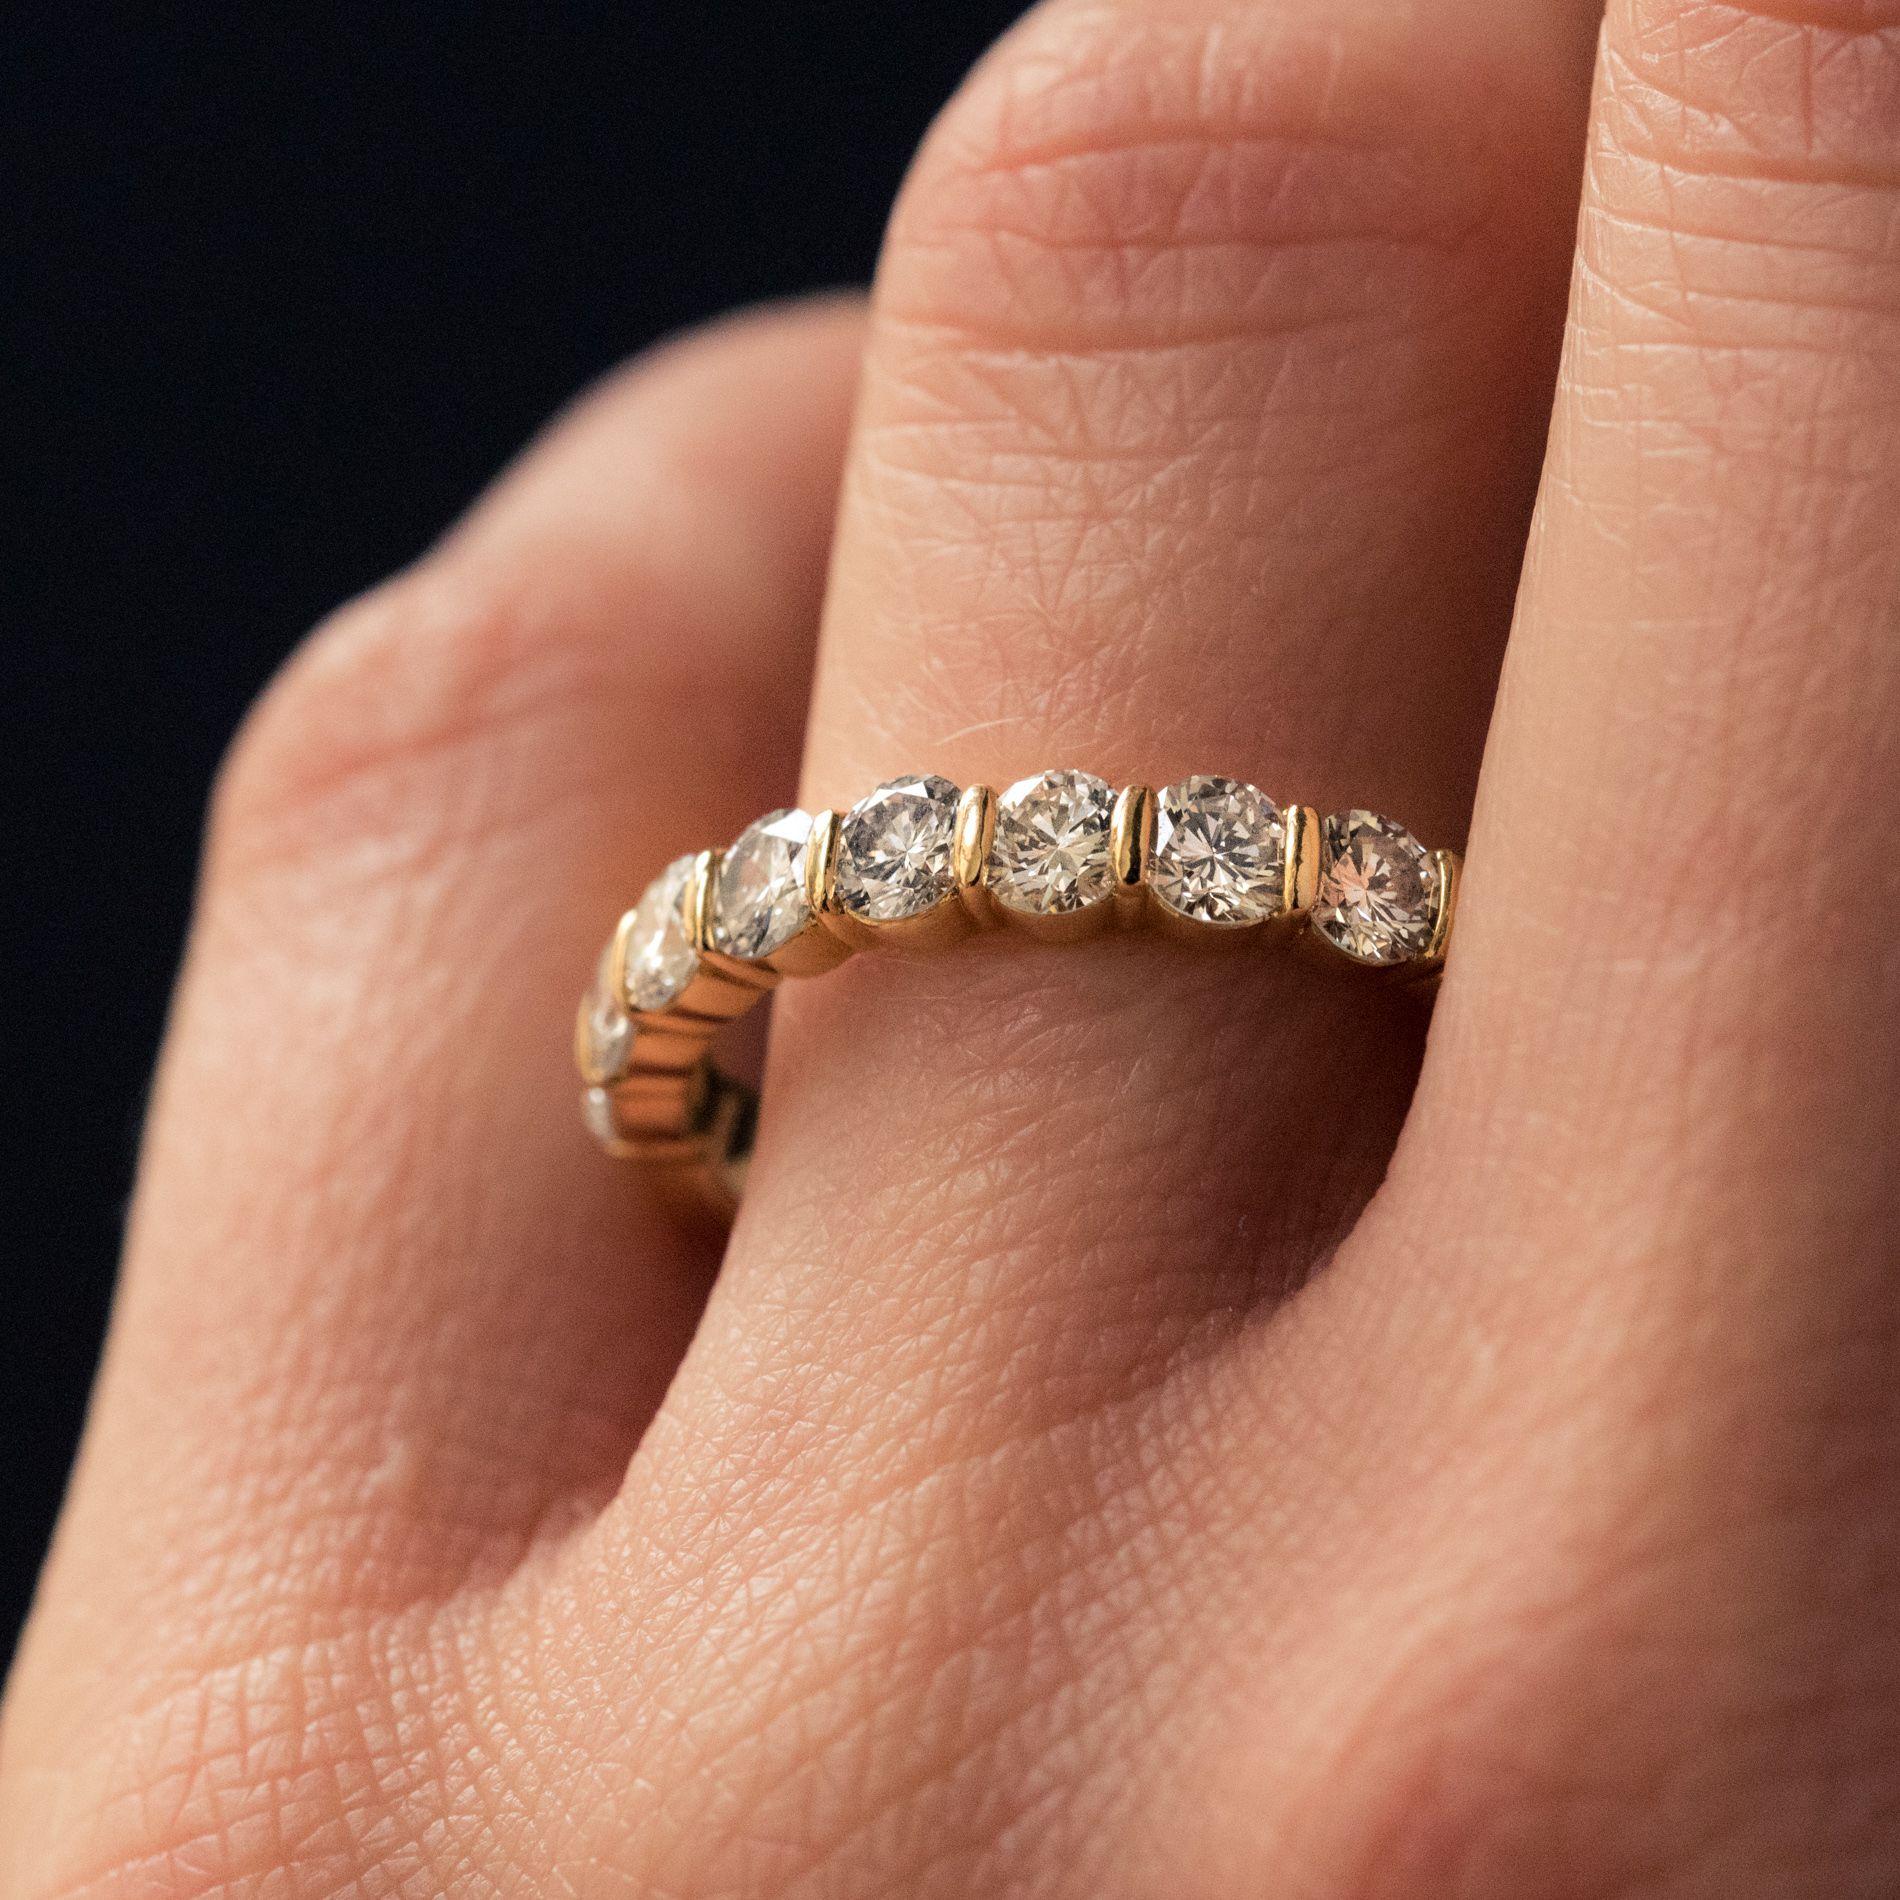 Women's Modern 1.49 Carat Diamond 18 Karat Yellow Gold Wedding Band Ring